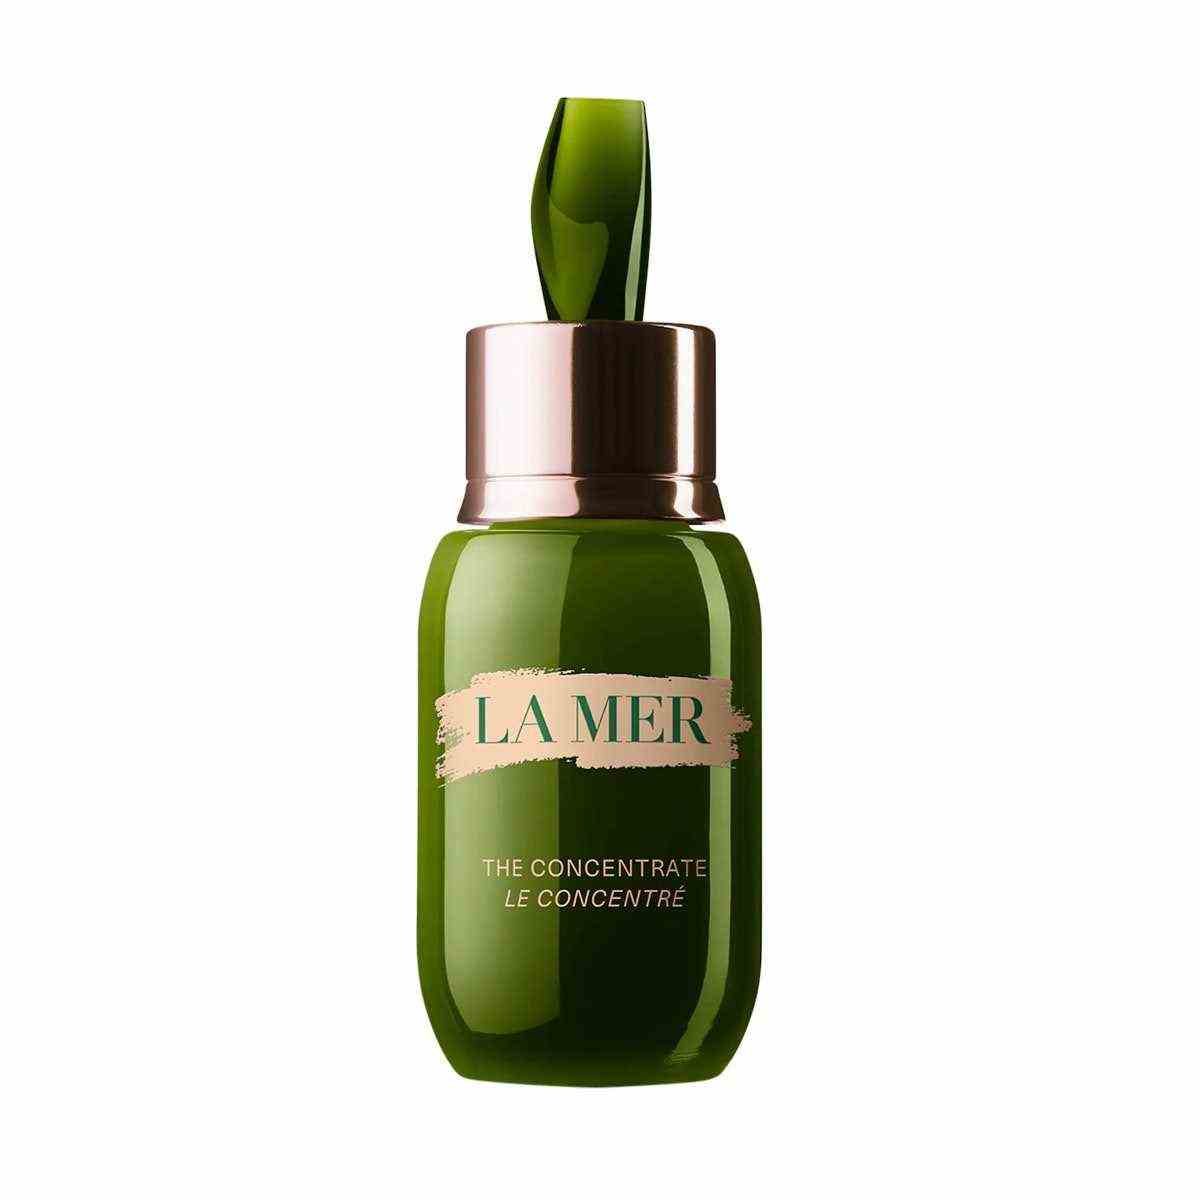 Eine grüne Flasche La Mer The Concentrate Serum auf weißem Hintergrund